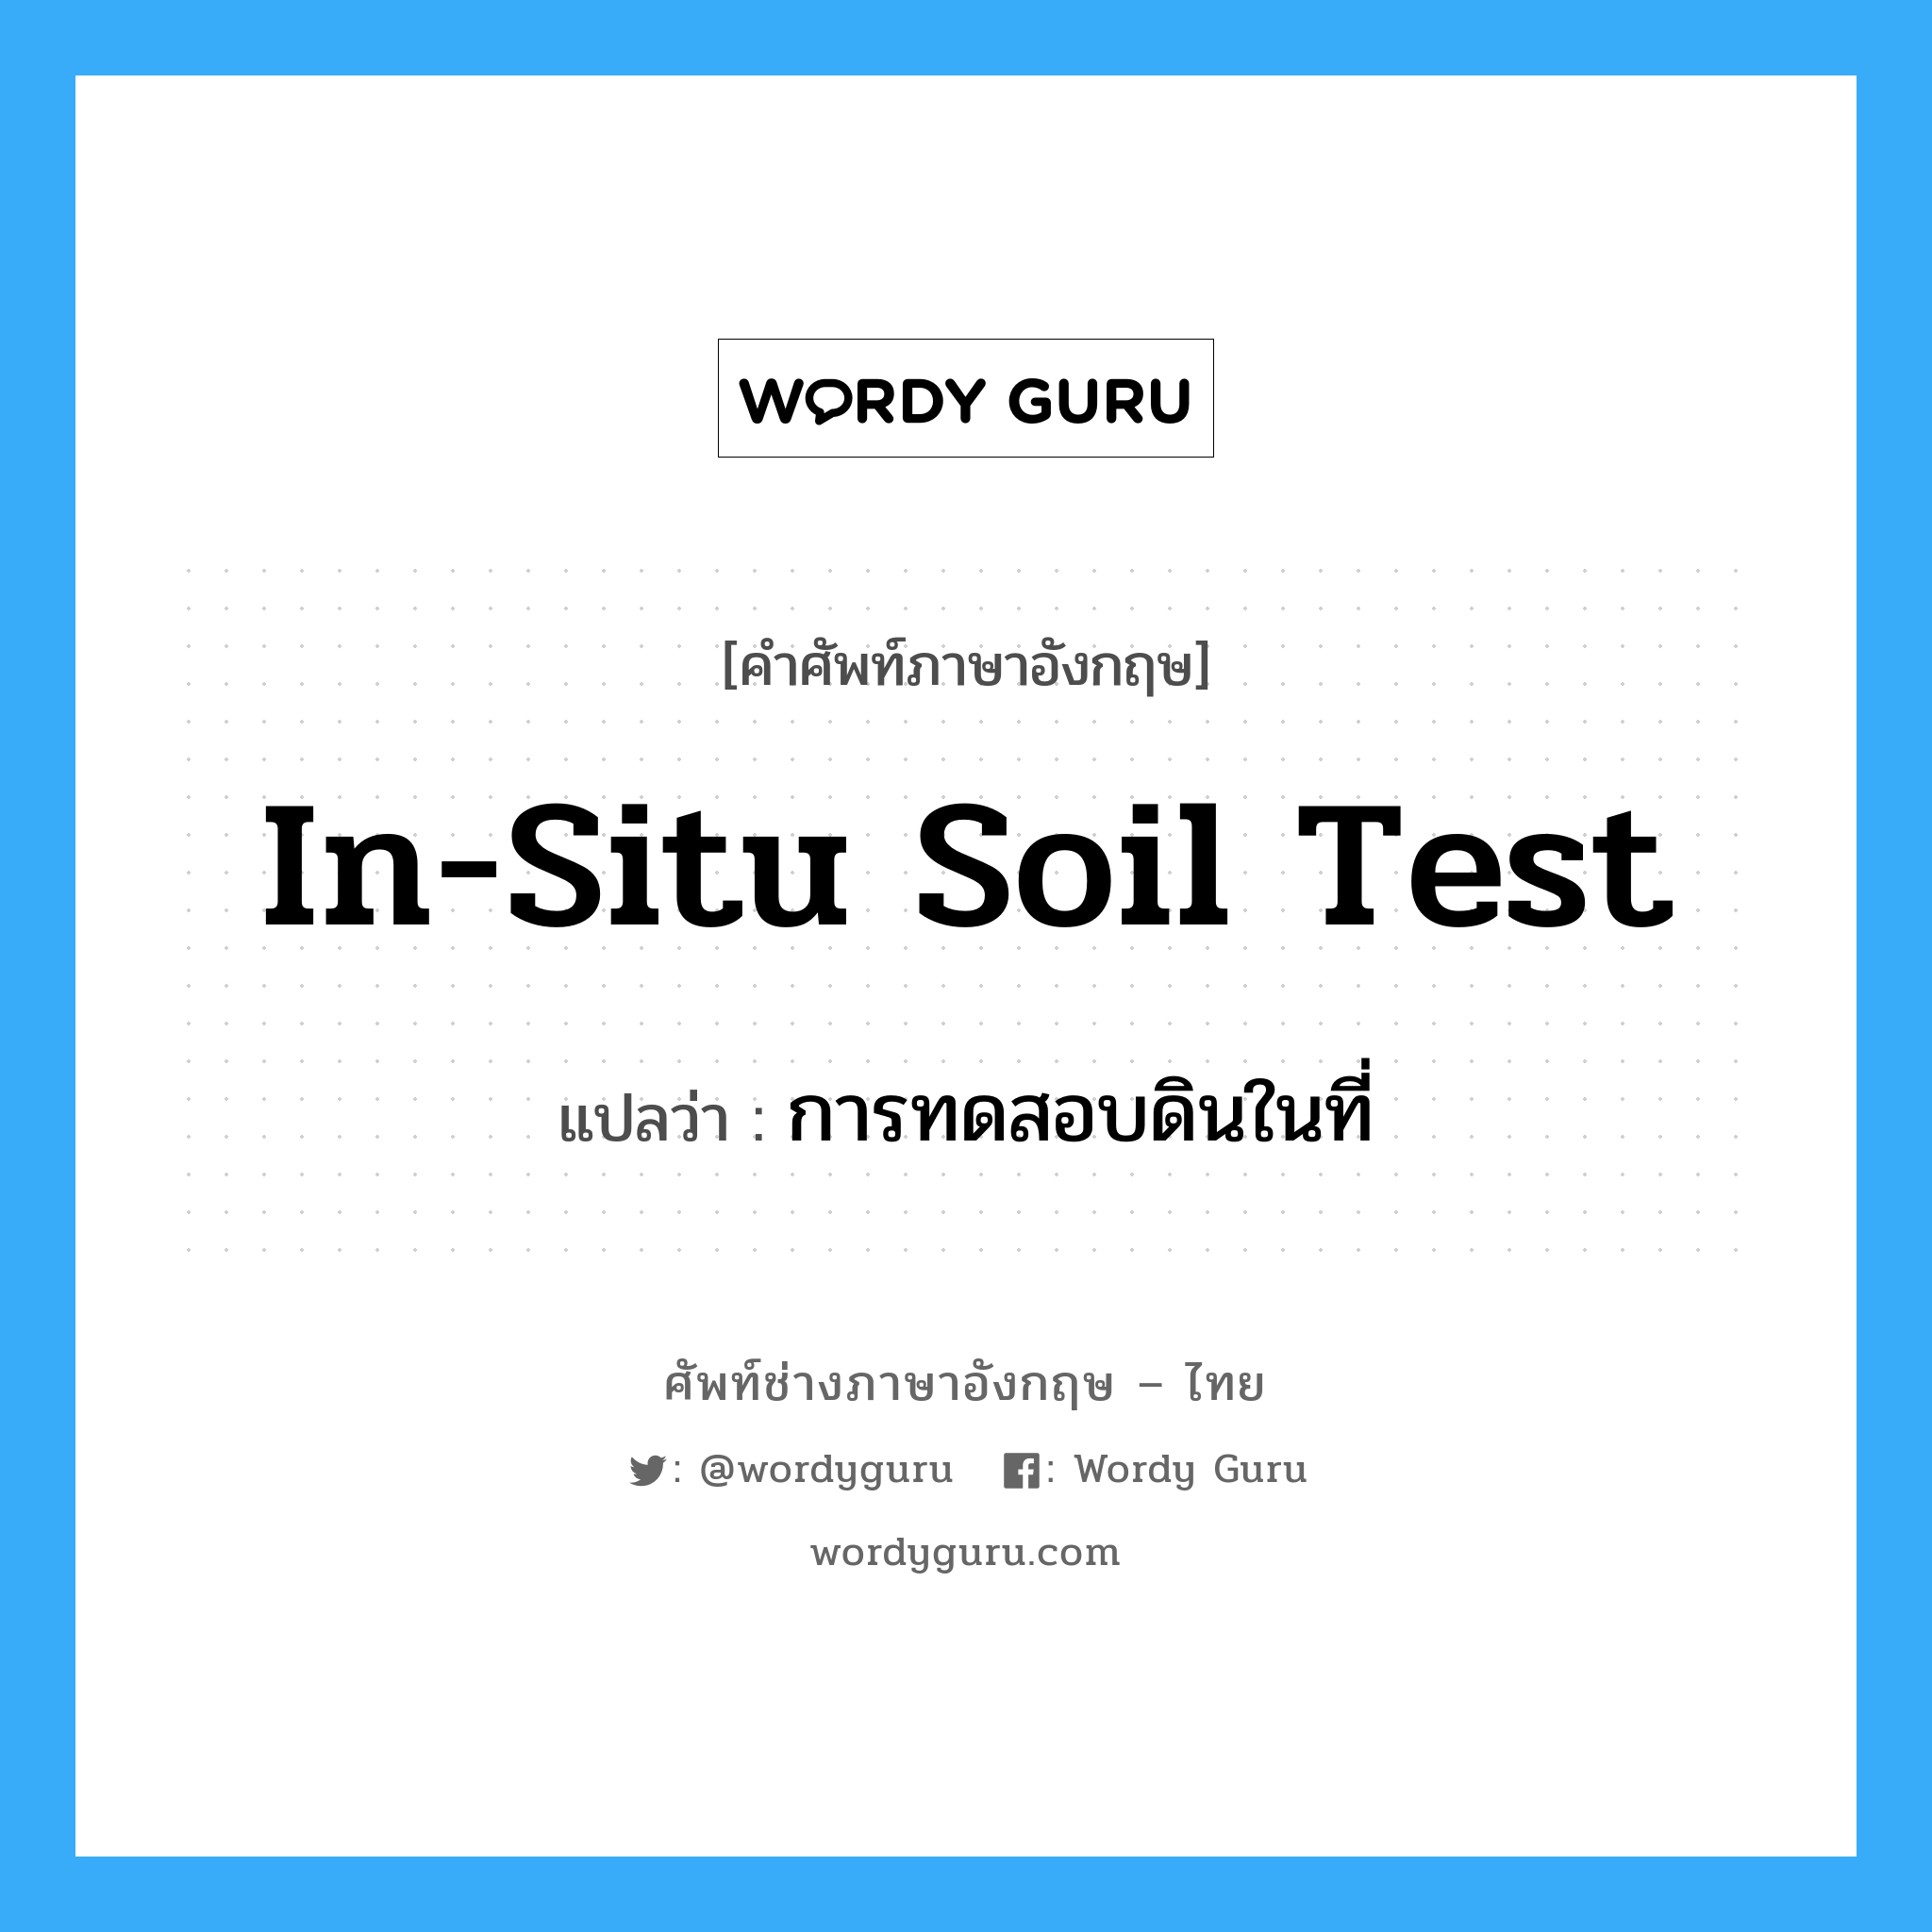 การทดสอบดินในที่ ภาษาอังกฤษ?, คำศัพท์ช่างภาษาอังกฤษ - ไทย การทดสอบดินในที่ คำศัพท์ภาษาอังกฤษ การทดสอบดินในที่ แปลว่า in-situ soil test